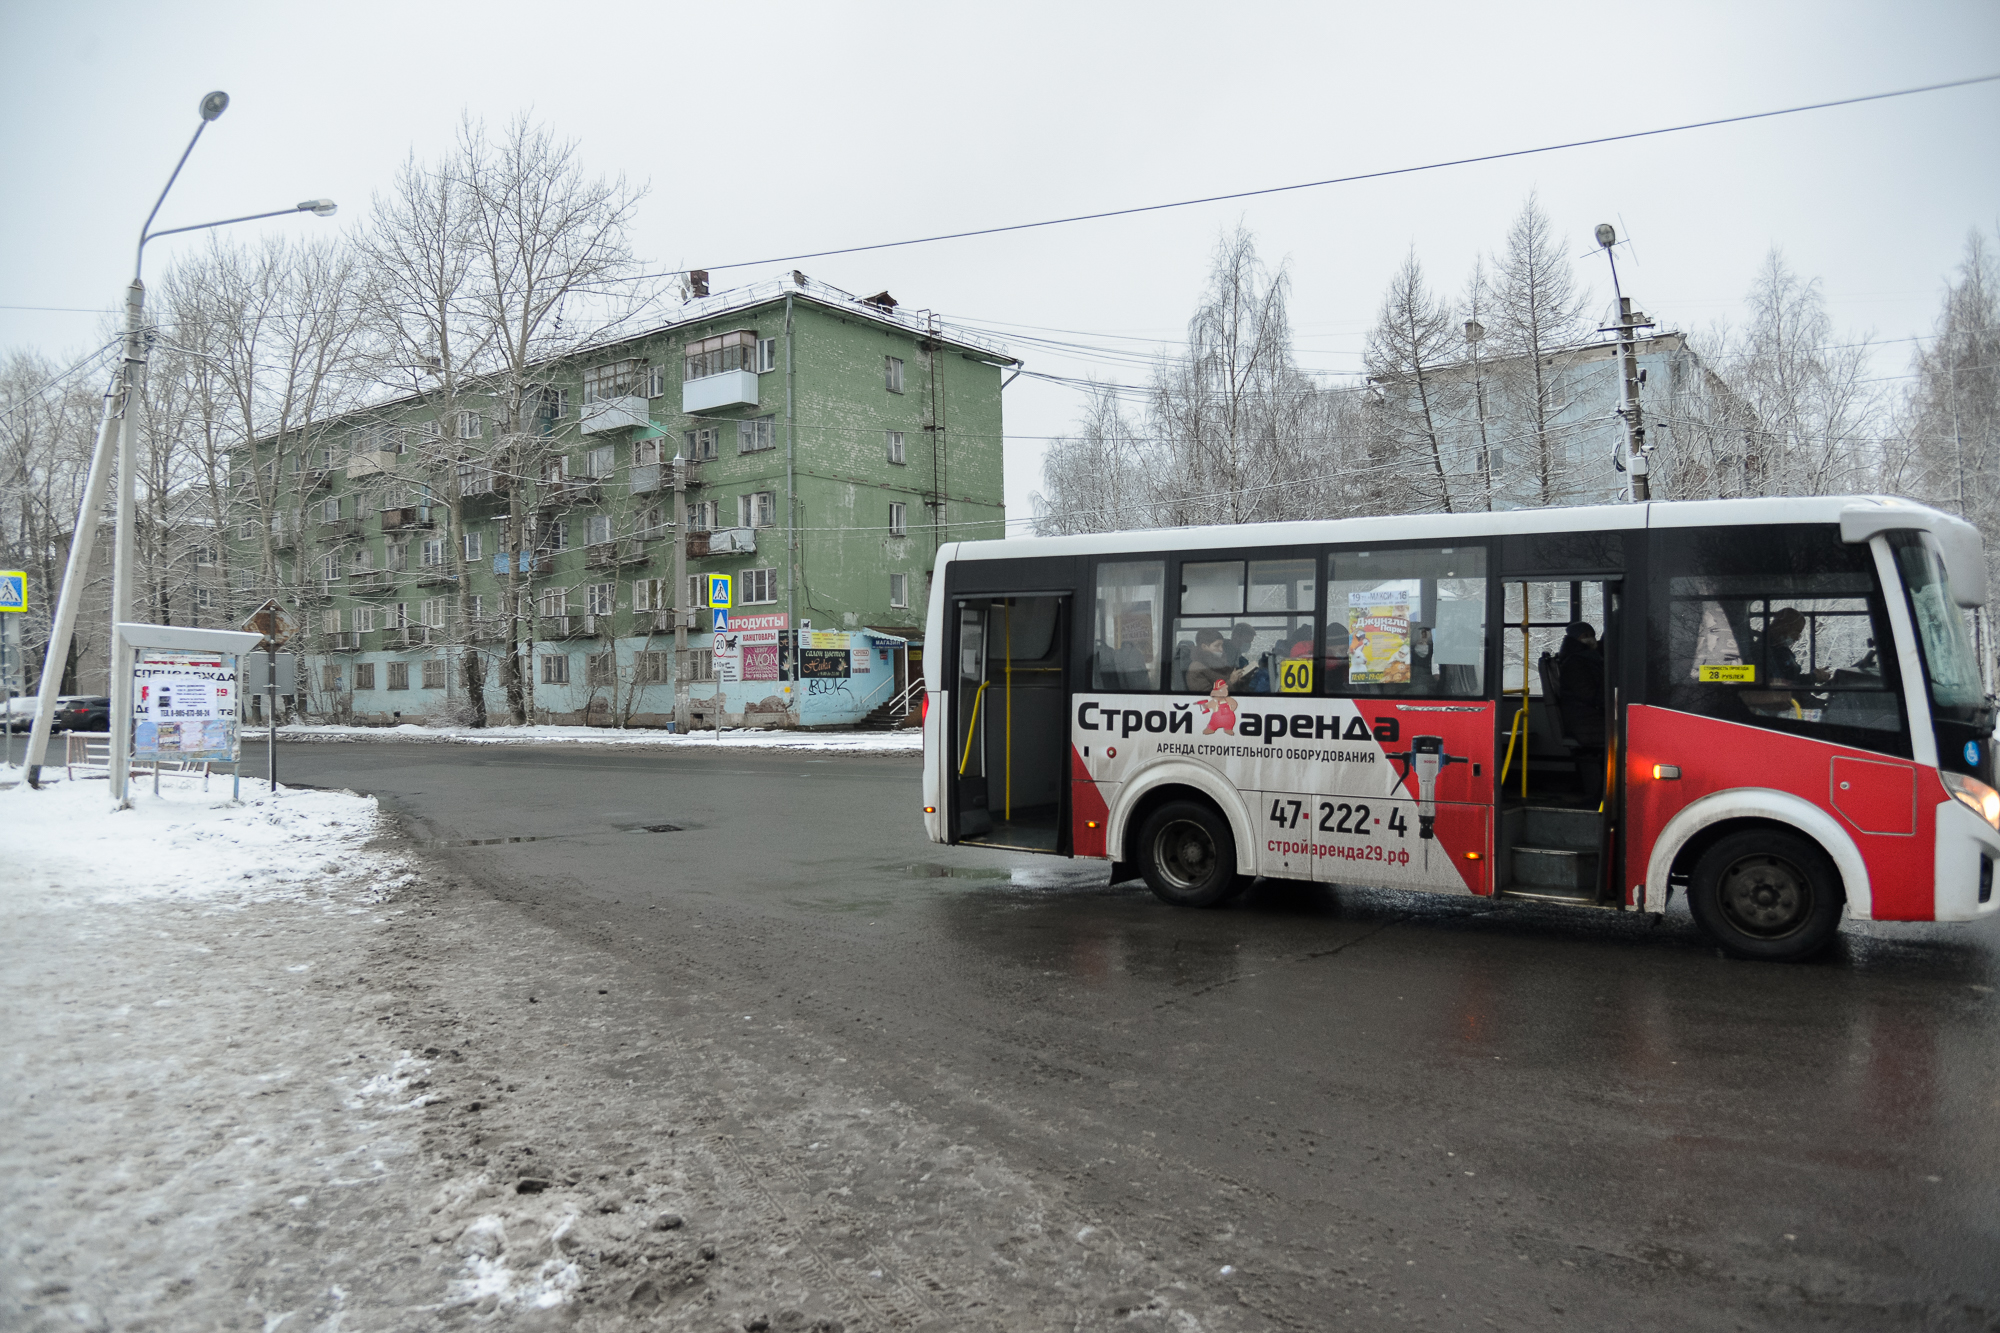 Сейчас такой автобус стоит почти 7 миллионов рублей